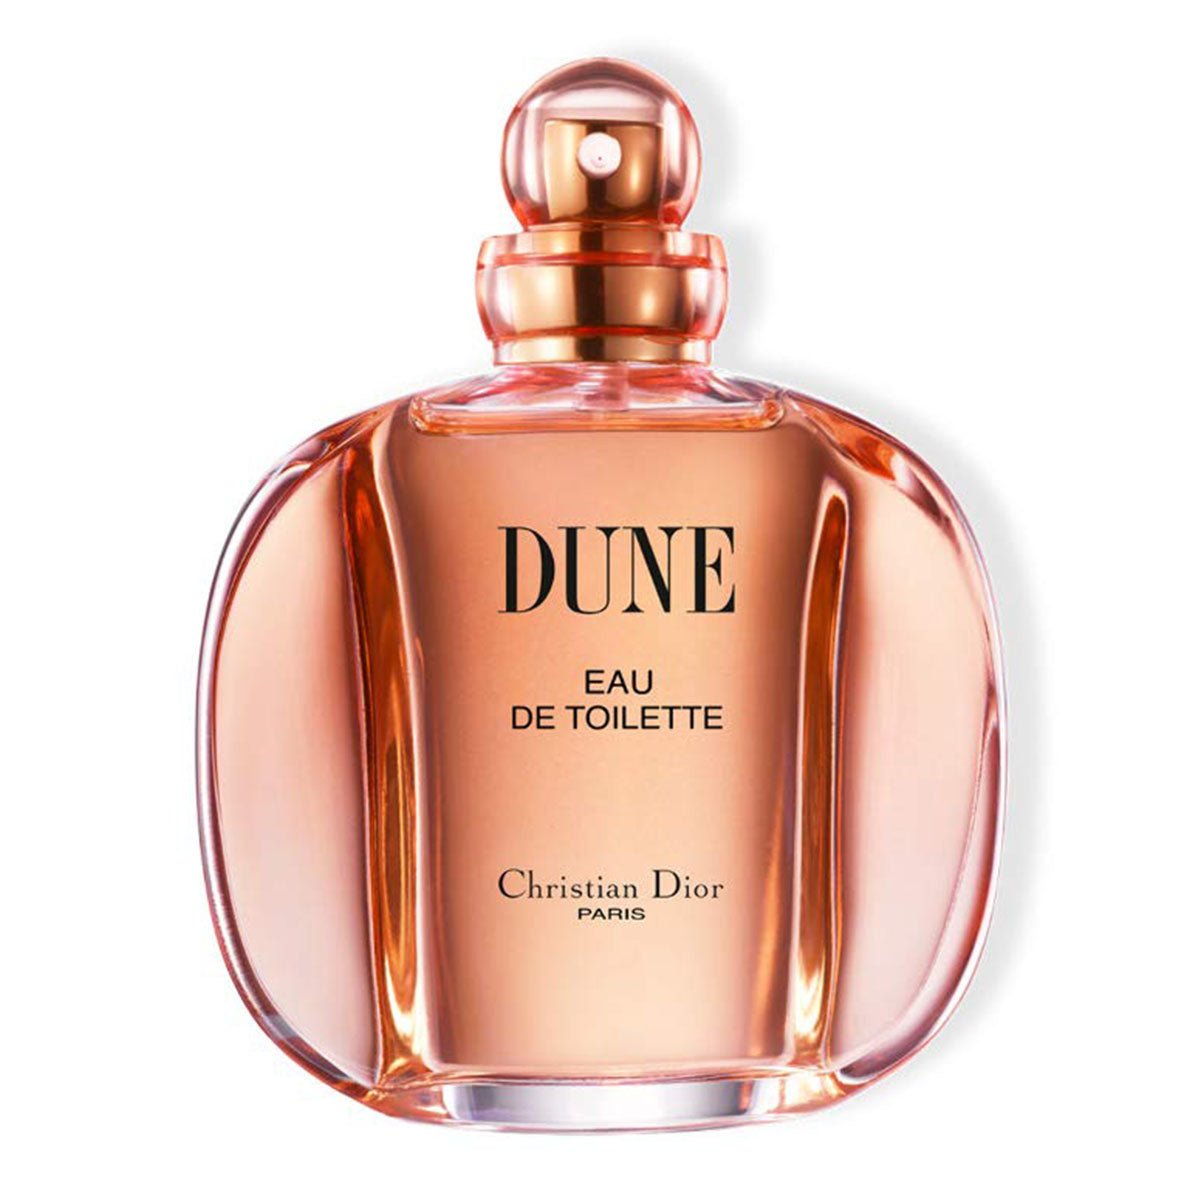 Christian Dior Dune Pour Femme For Women Edt Spray 100ml -Perfume - AllurebeautypkChristian Dior Dune Pour Femme For Women Edt Spray 100ml -Perfume